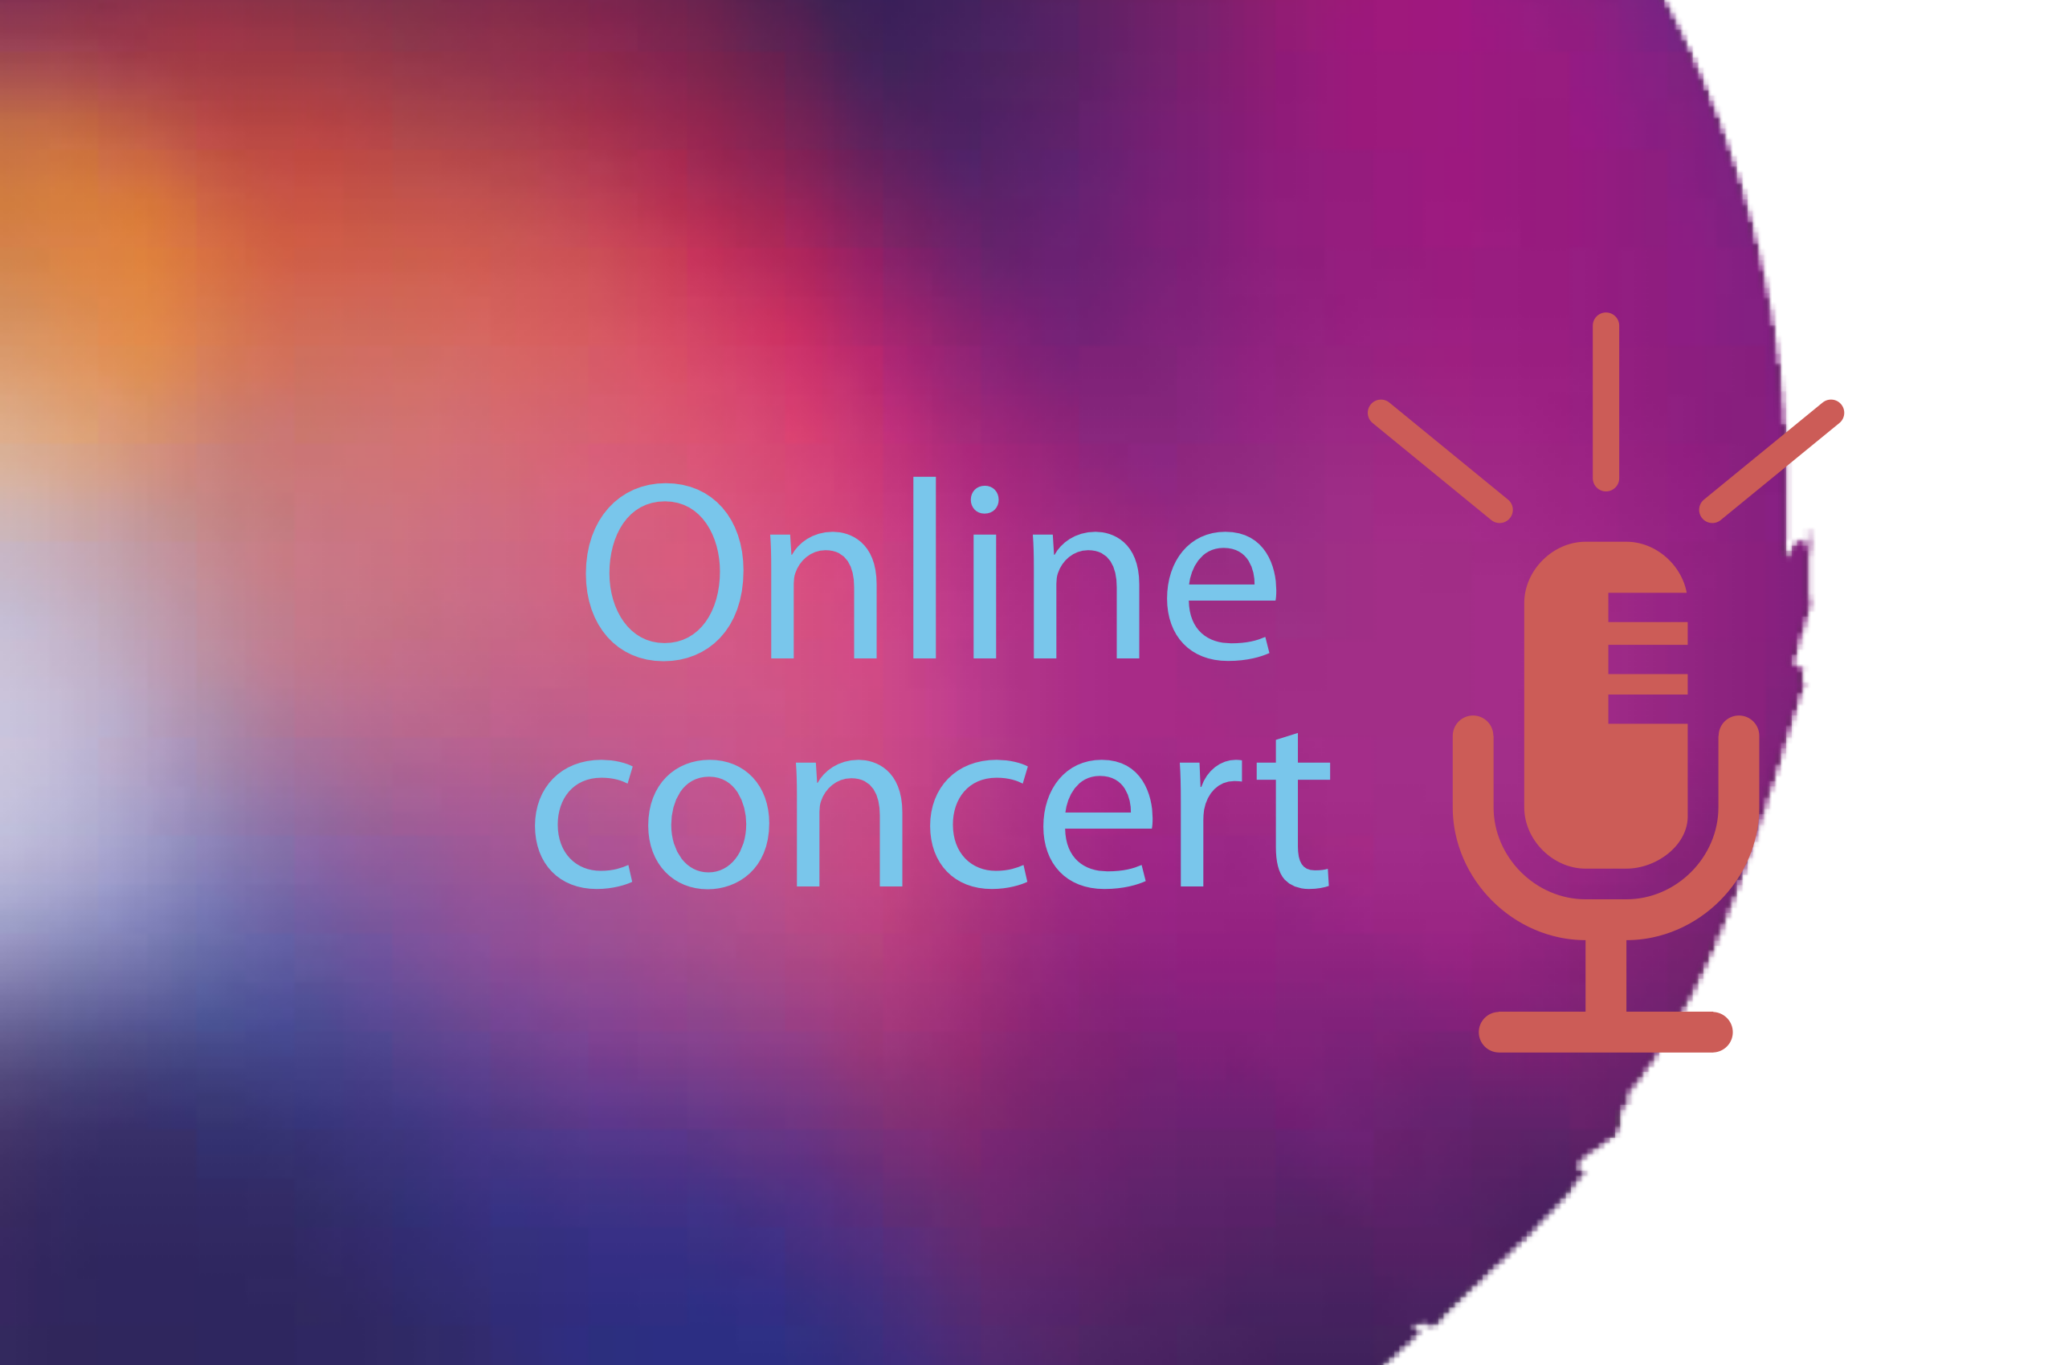 online concert